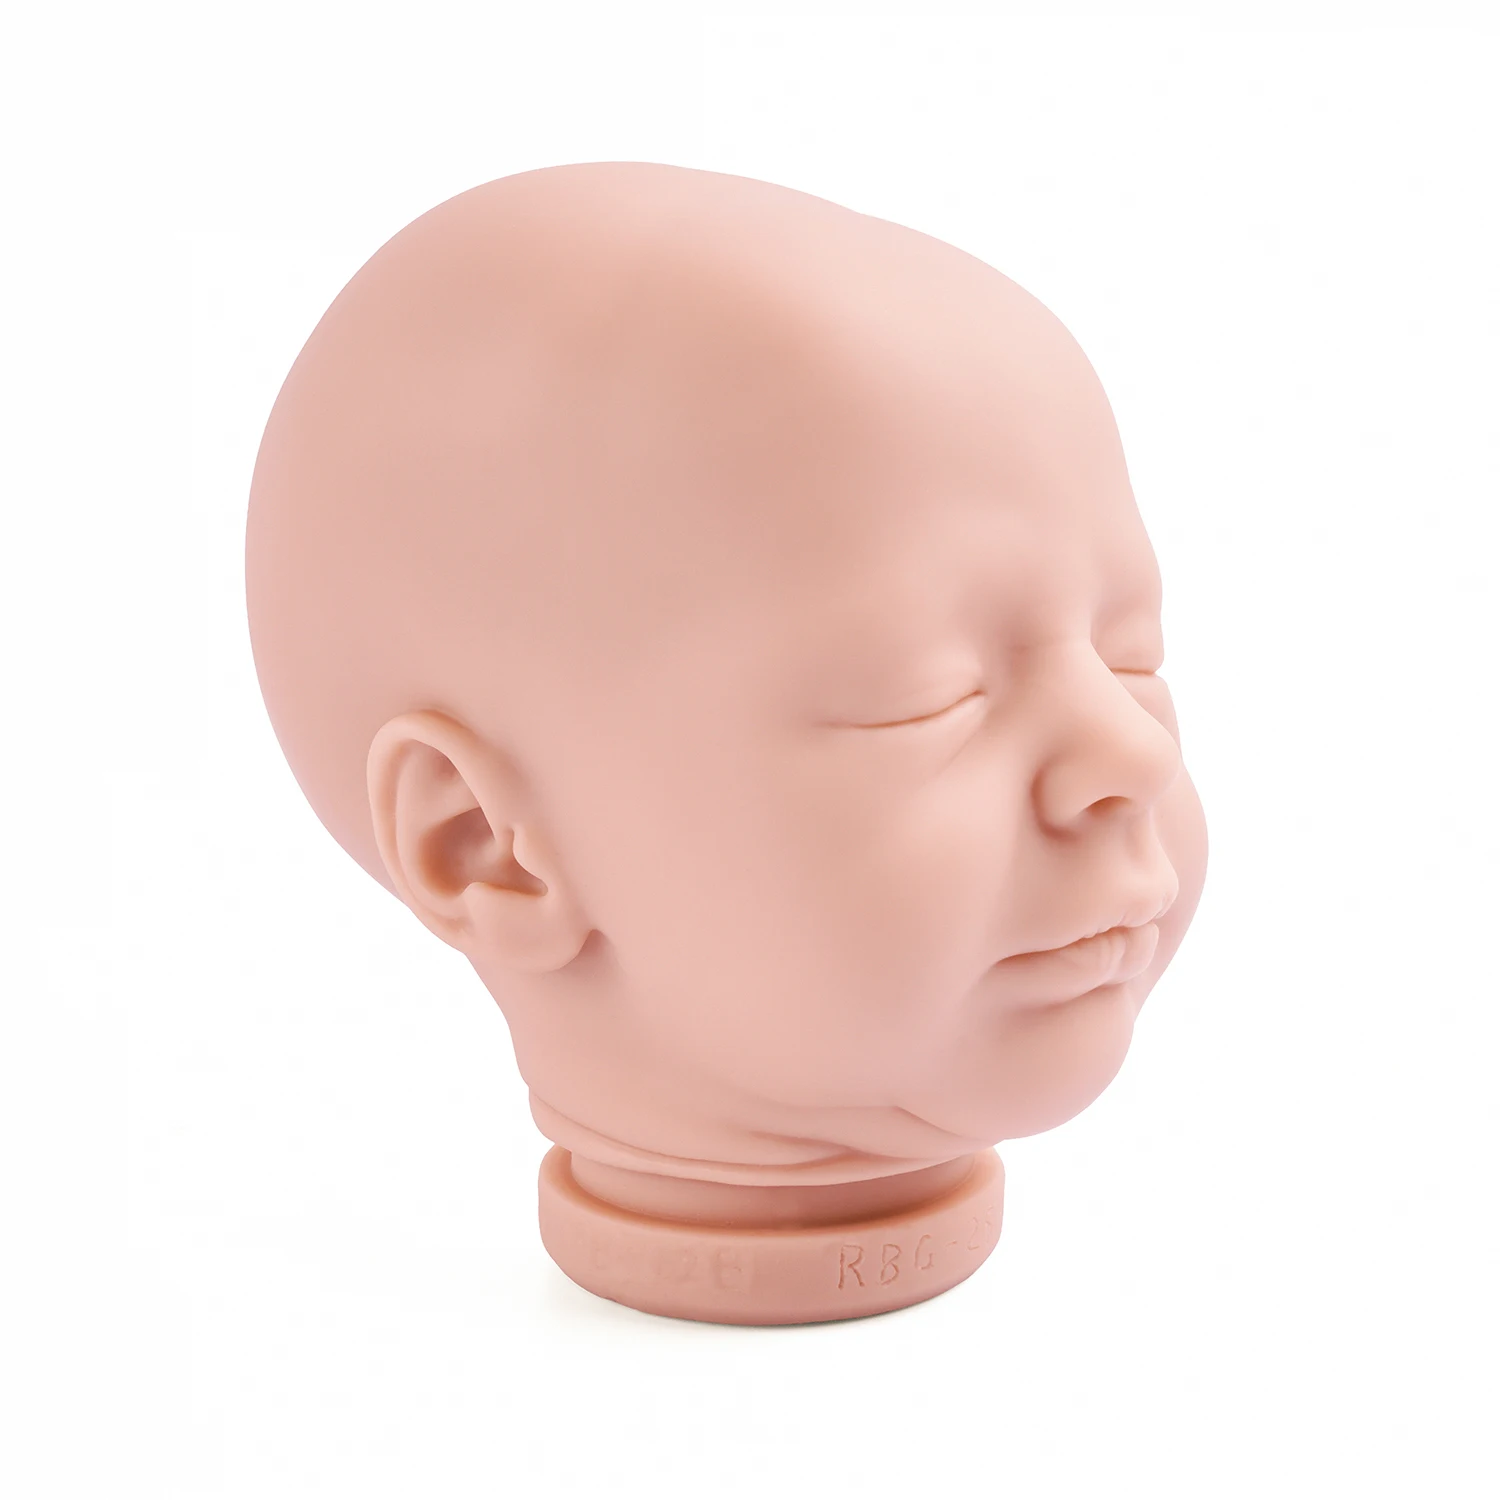 RSG Reborn Baby Doll, 17 Colių 43cm Gyvas Naujagimis Drebulė Miega Vinilo Unpainted Nebaigtų Lėlės Dalys 